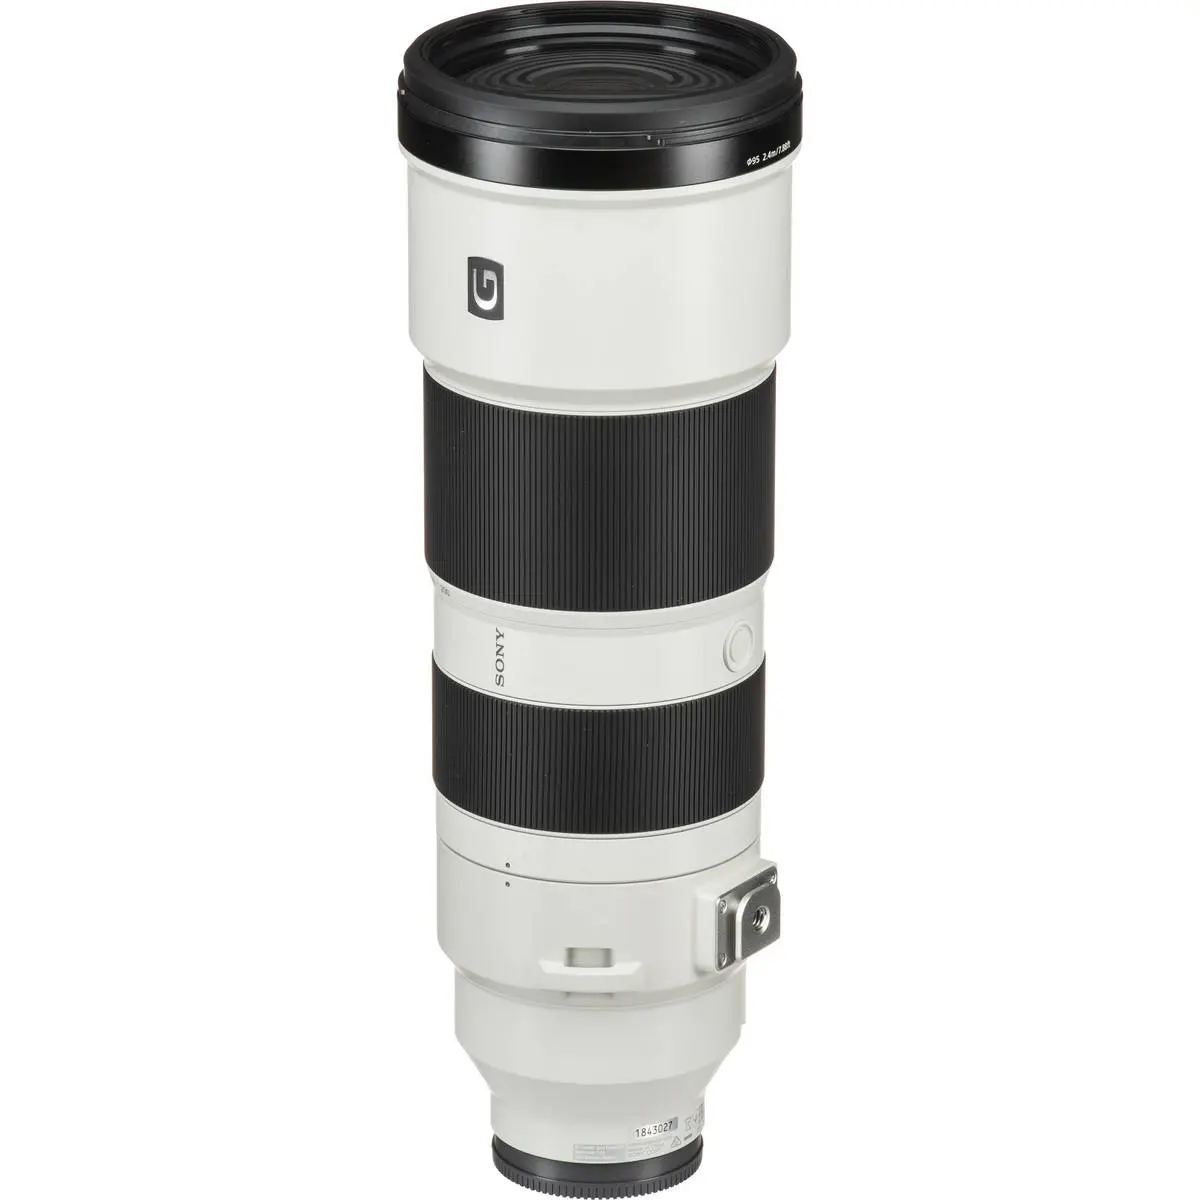 3. Sony FE 200-600mm f/5.6-6.3 G OSS Telephoto Lens E-Mount